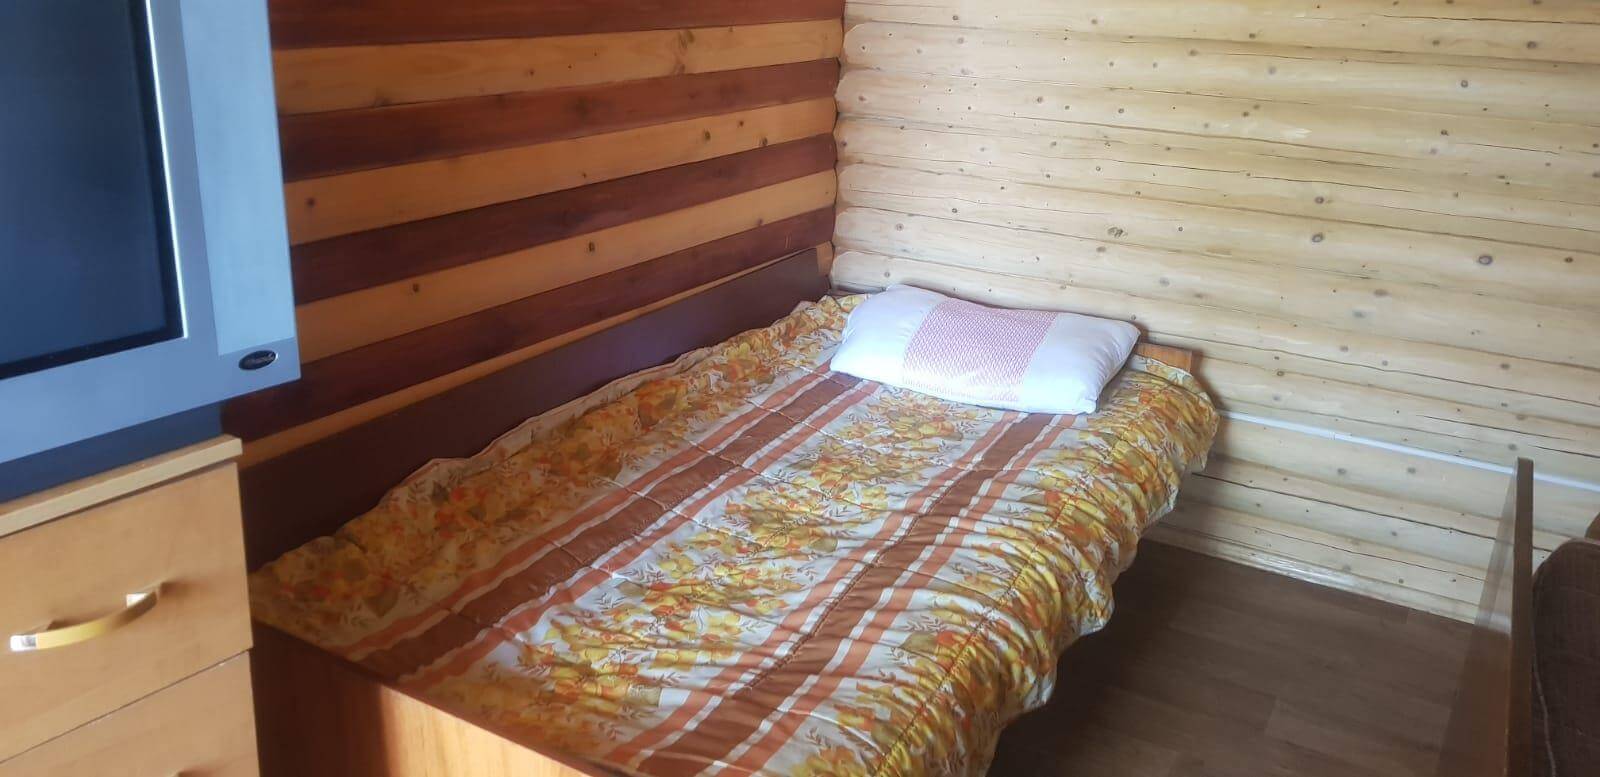 Дом Сова 8 мест 2 комнатный + кухня - Limpopo Travel в России